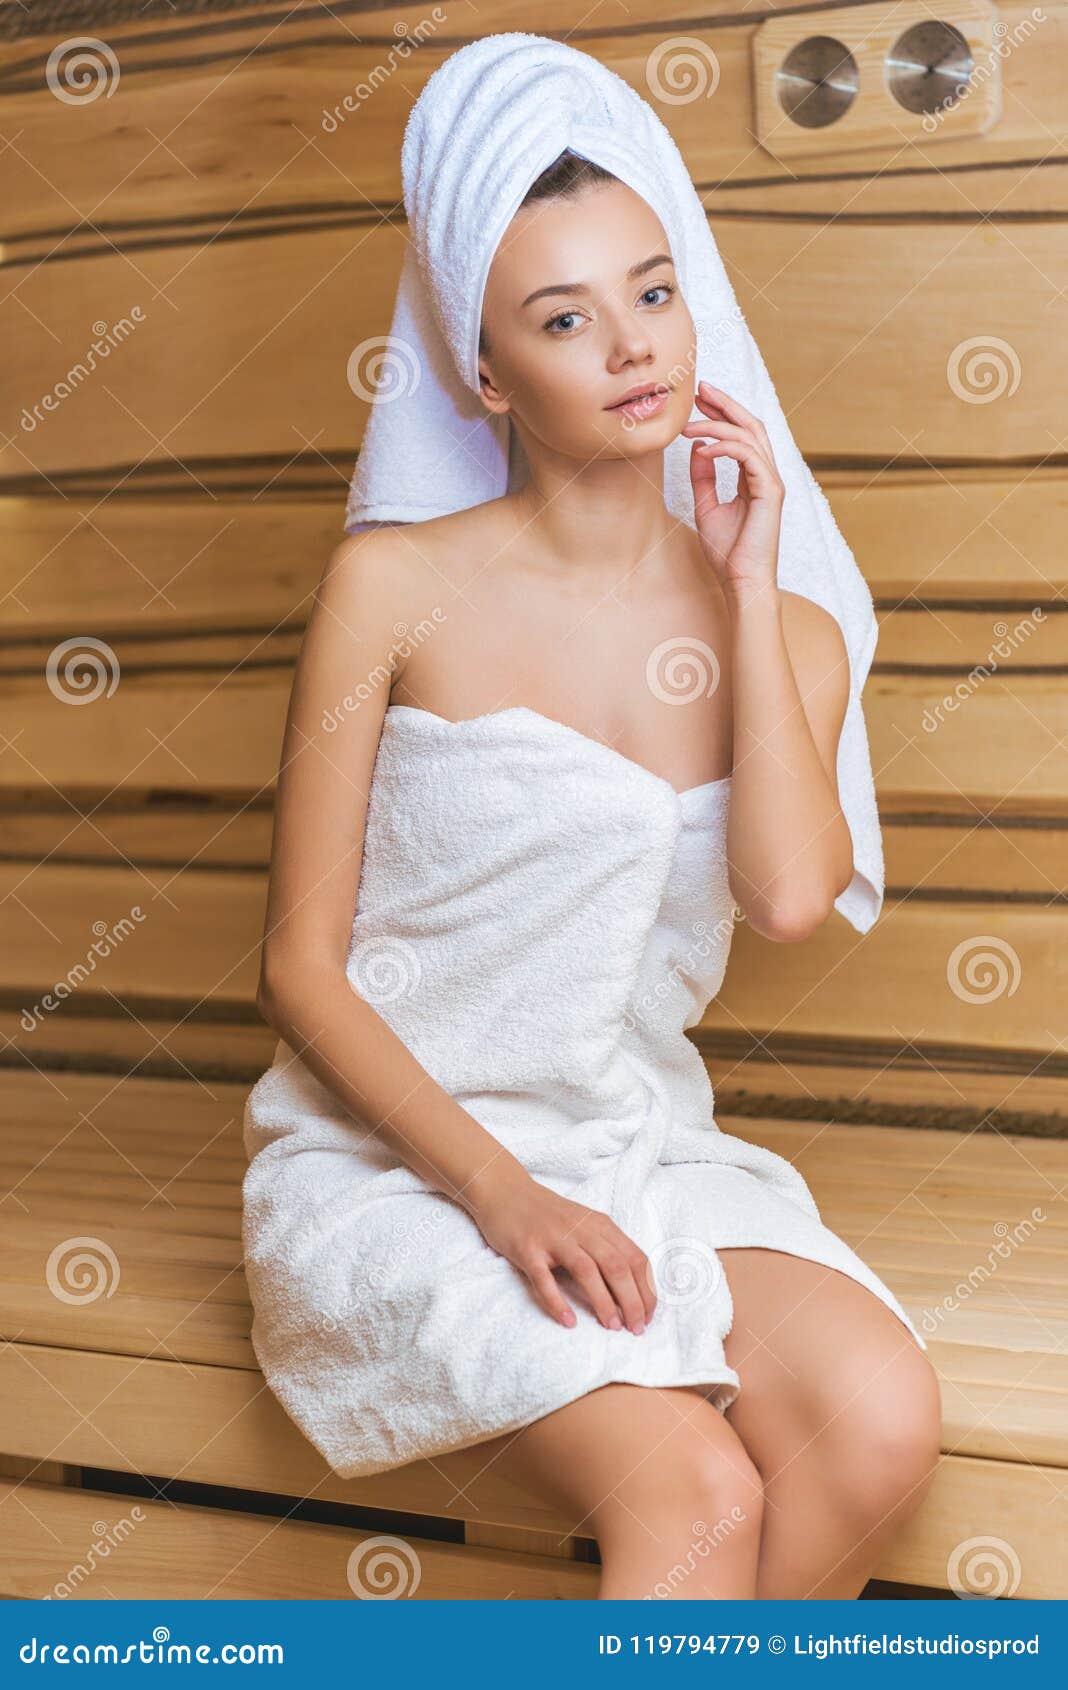 Девочка в полотенце. Девушка в полотенце. Девушка в бананом пплаьенце. Девушка в бане в полотенце. Фотосессия полотенце девушка.